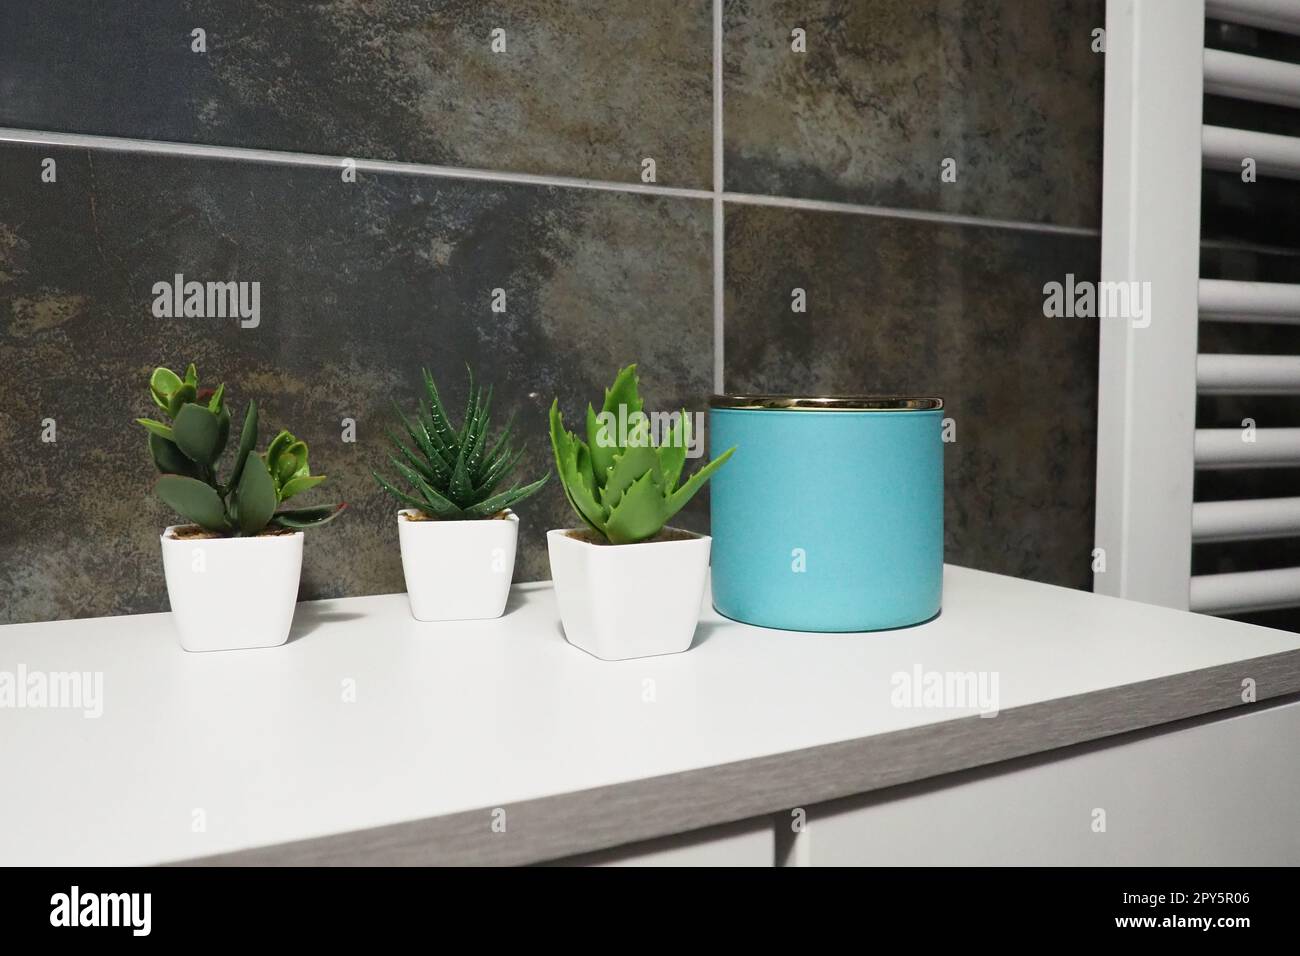 Dekorelemente im Badezimmer. Ein blaues Glas mit cremefarbenen und grünen Pflanzen in kleinen weißen Töpfen steht auf einem Regal des Schranks. Schwarze Wandfliesen. Bad und WC-Innenausstattung. Heizkörper an der Wand. Stockfoto